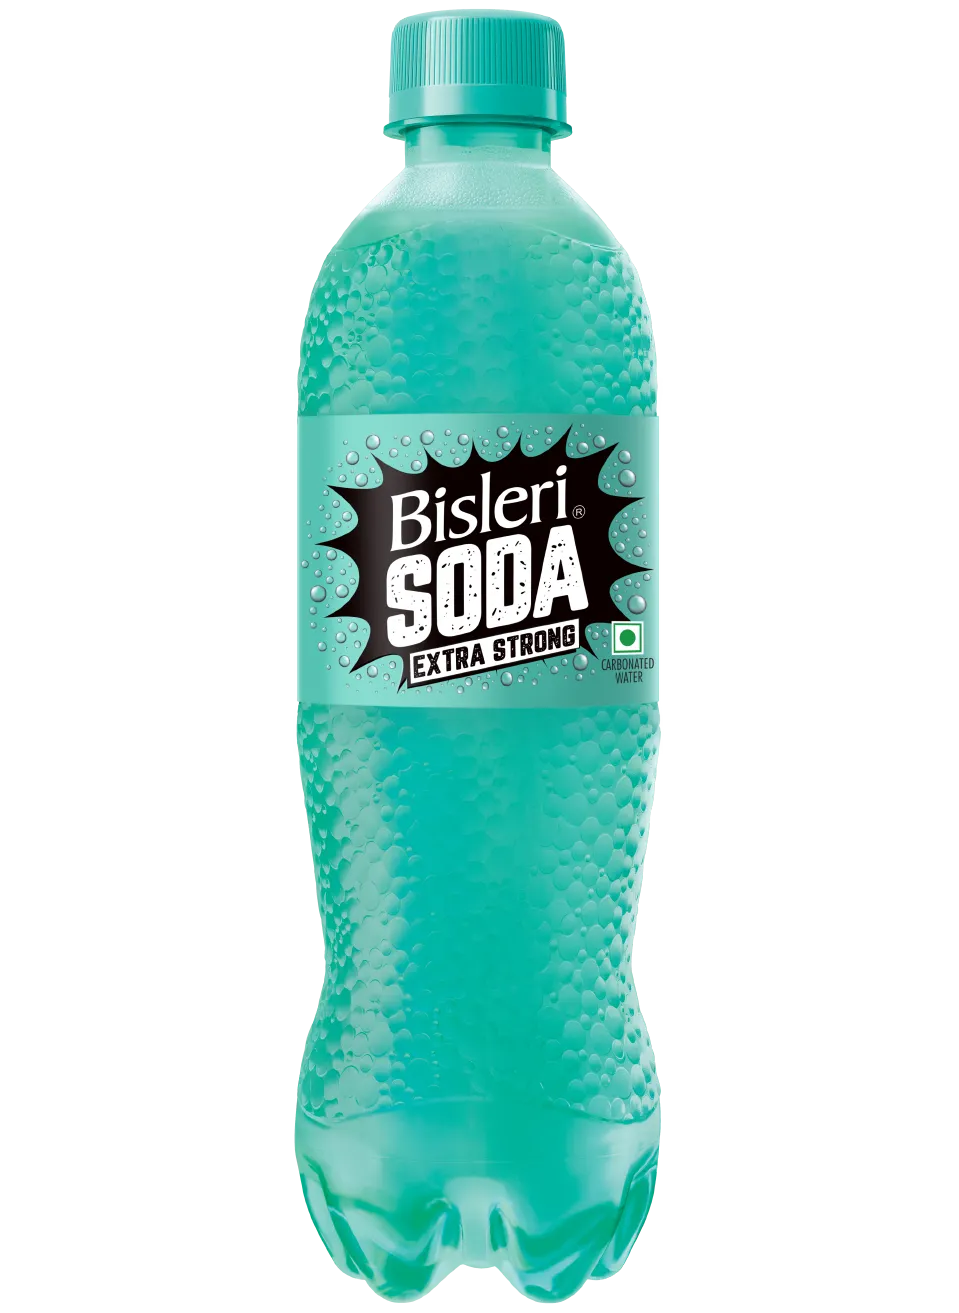 soda-bottle